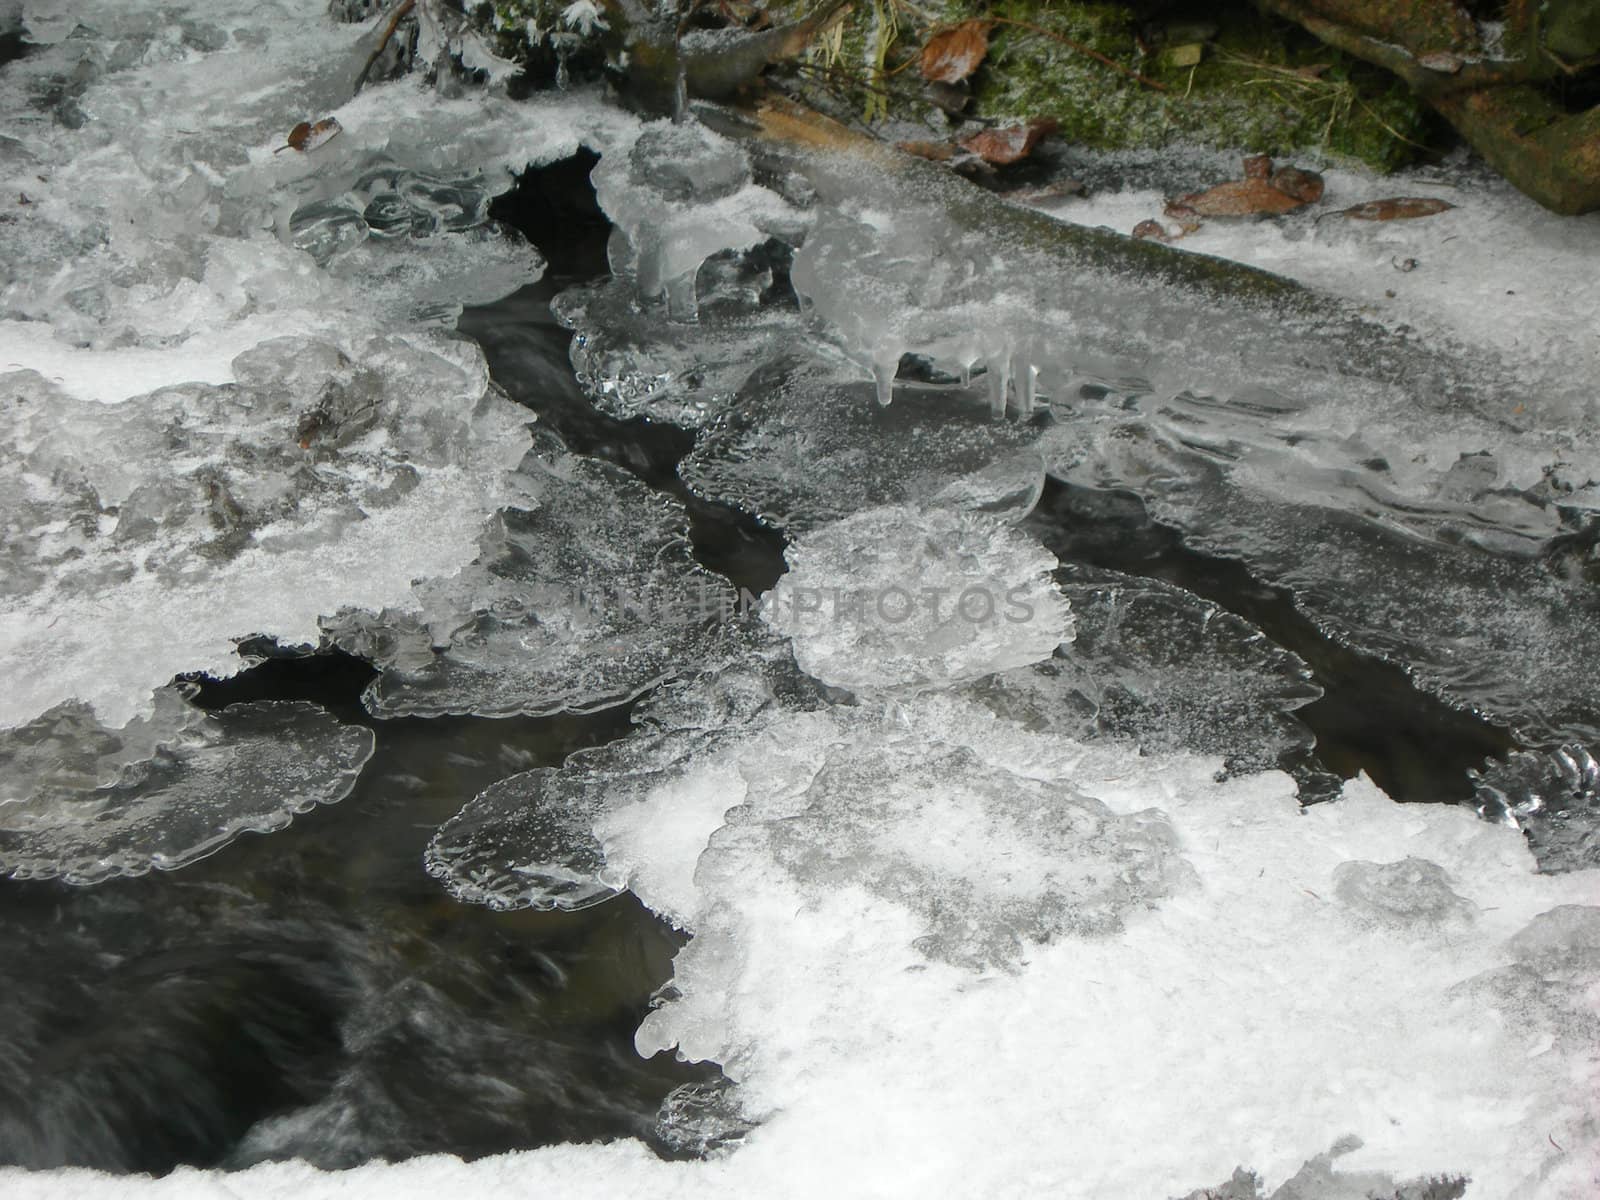 Frozen river2 by drakodav